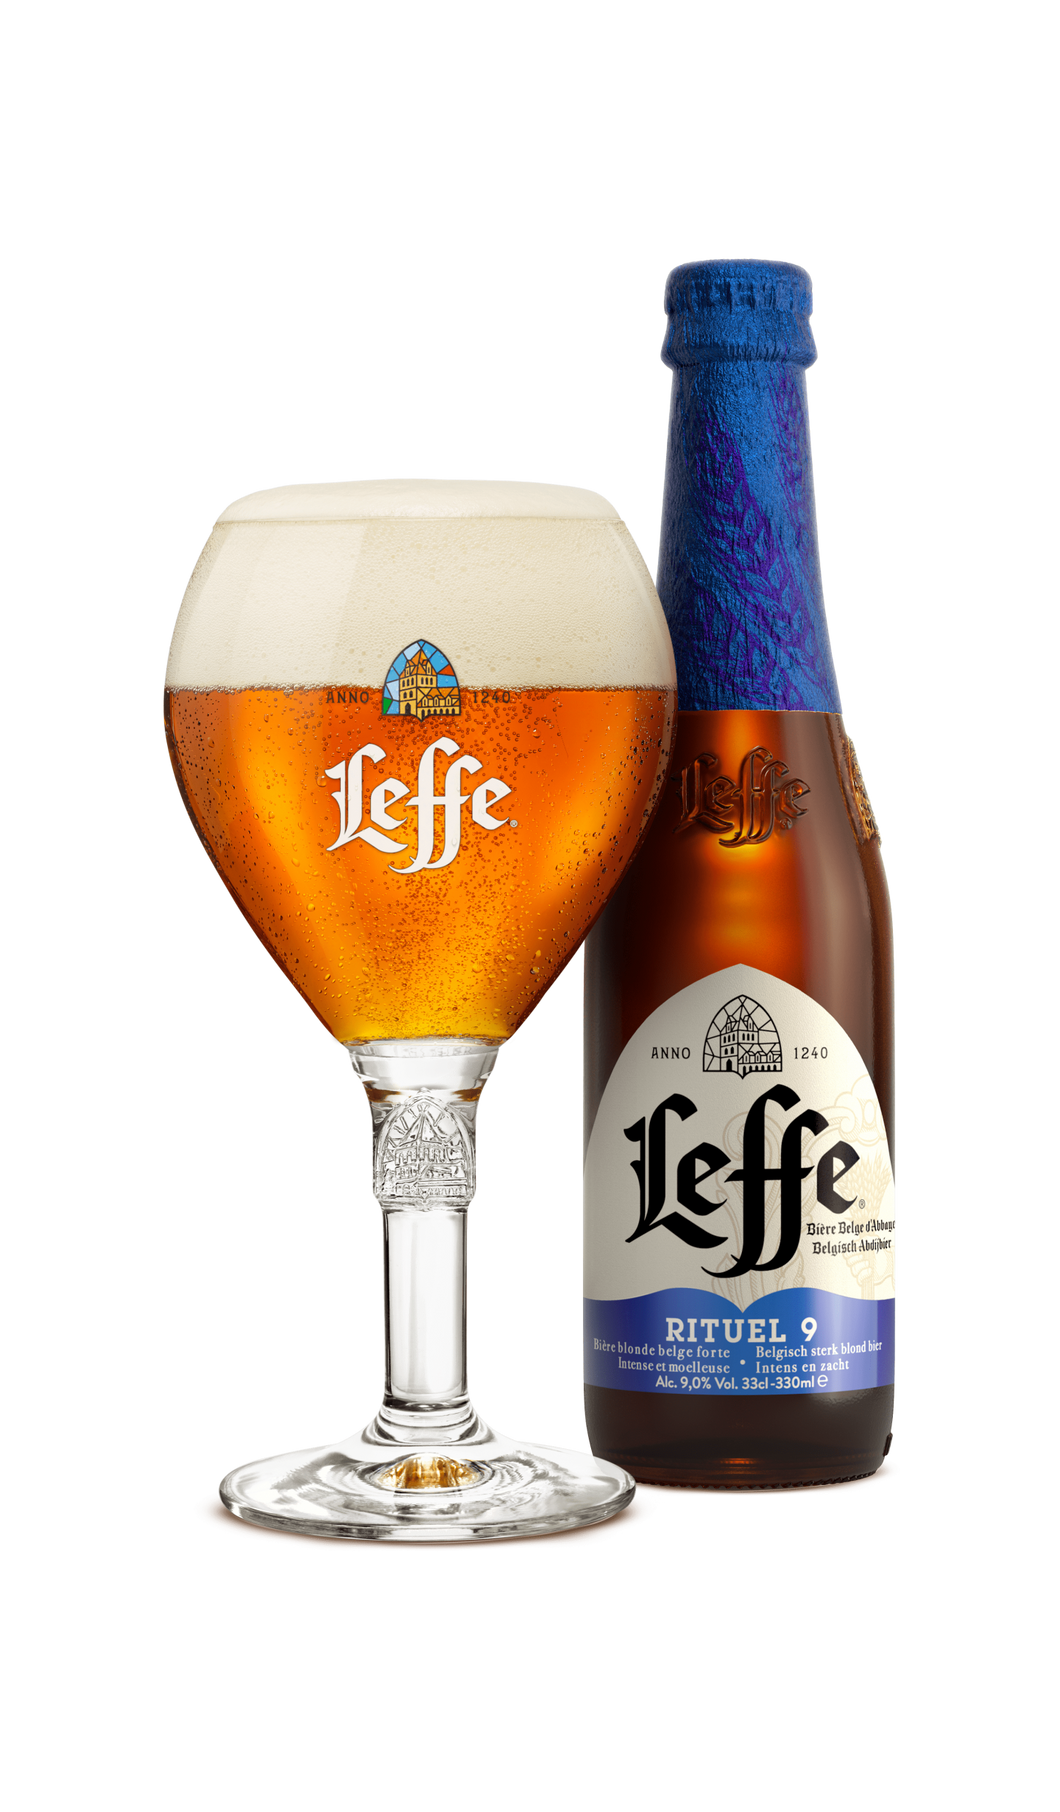 Leffe Rituel 9° - Abbaye de Leffe - Belgian Strong Golden Ale, 9%, 330ml Bottle